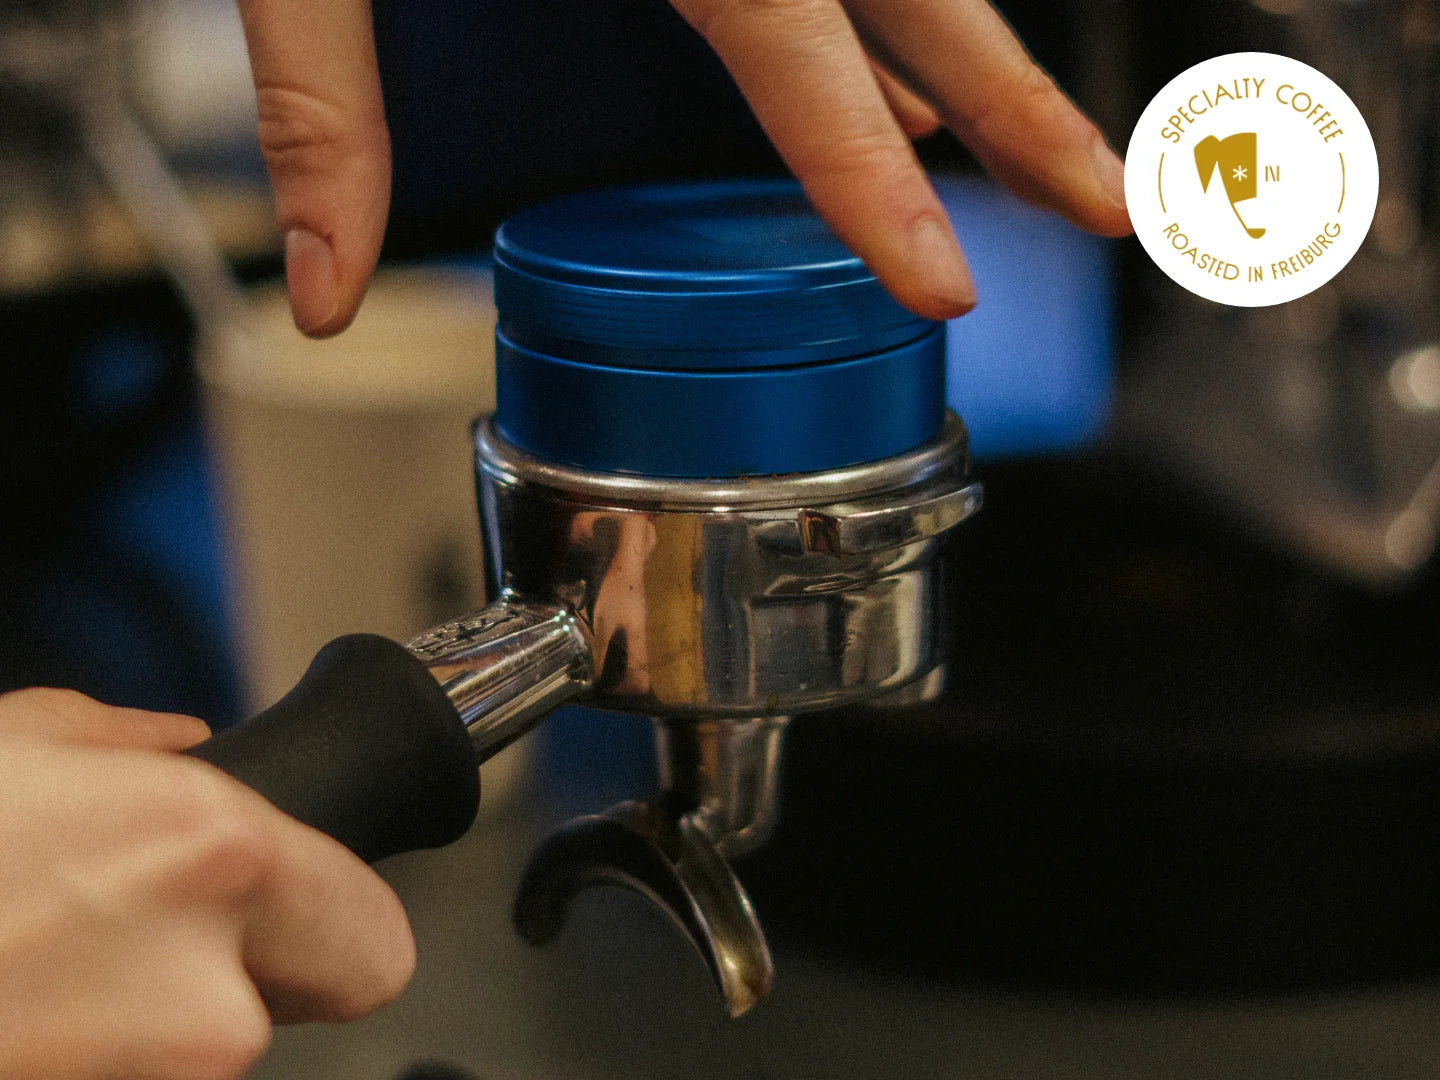 Titelbild des Artikels zur Espressozubereitung. Zu sehen ist ein Siebträger mit Kaffeemehl, der von zwei Händen gehalten wird. Auf dem Bild steht in weißer Schrift "Brew Guide".